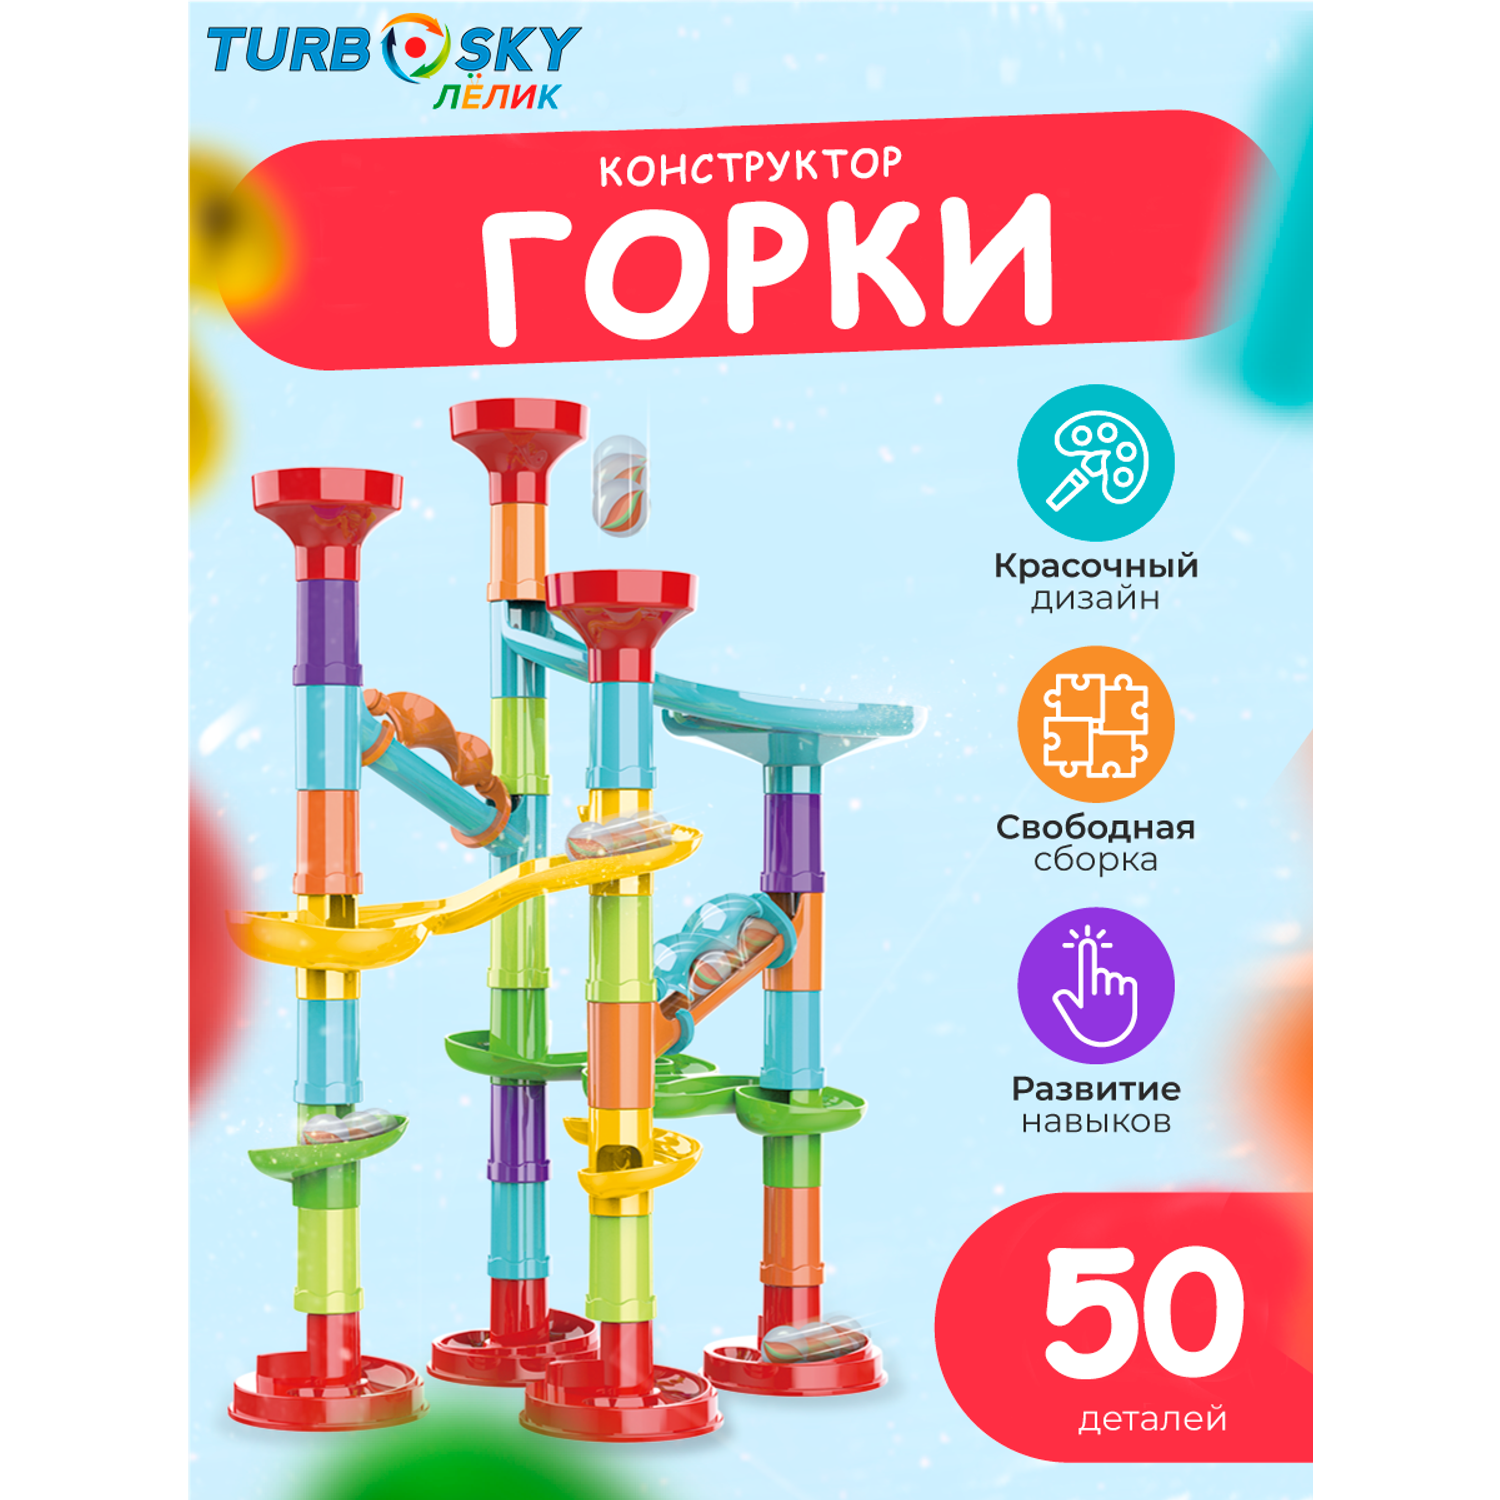 Конструктор Turbosky Лёлик Горки 50 элементов - фото 1